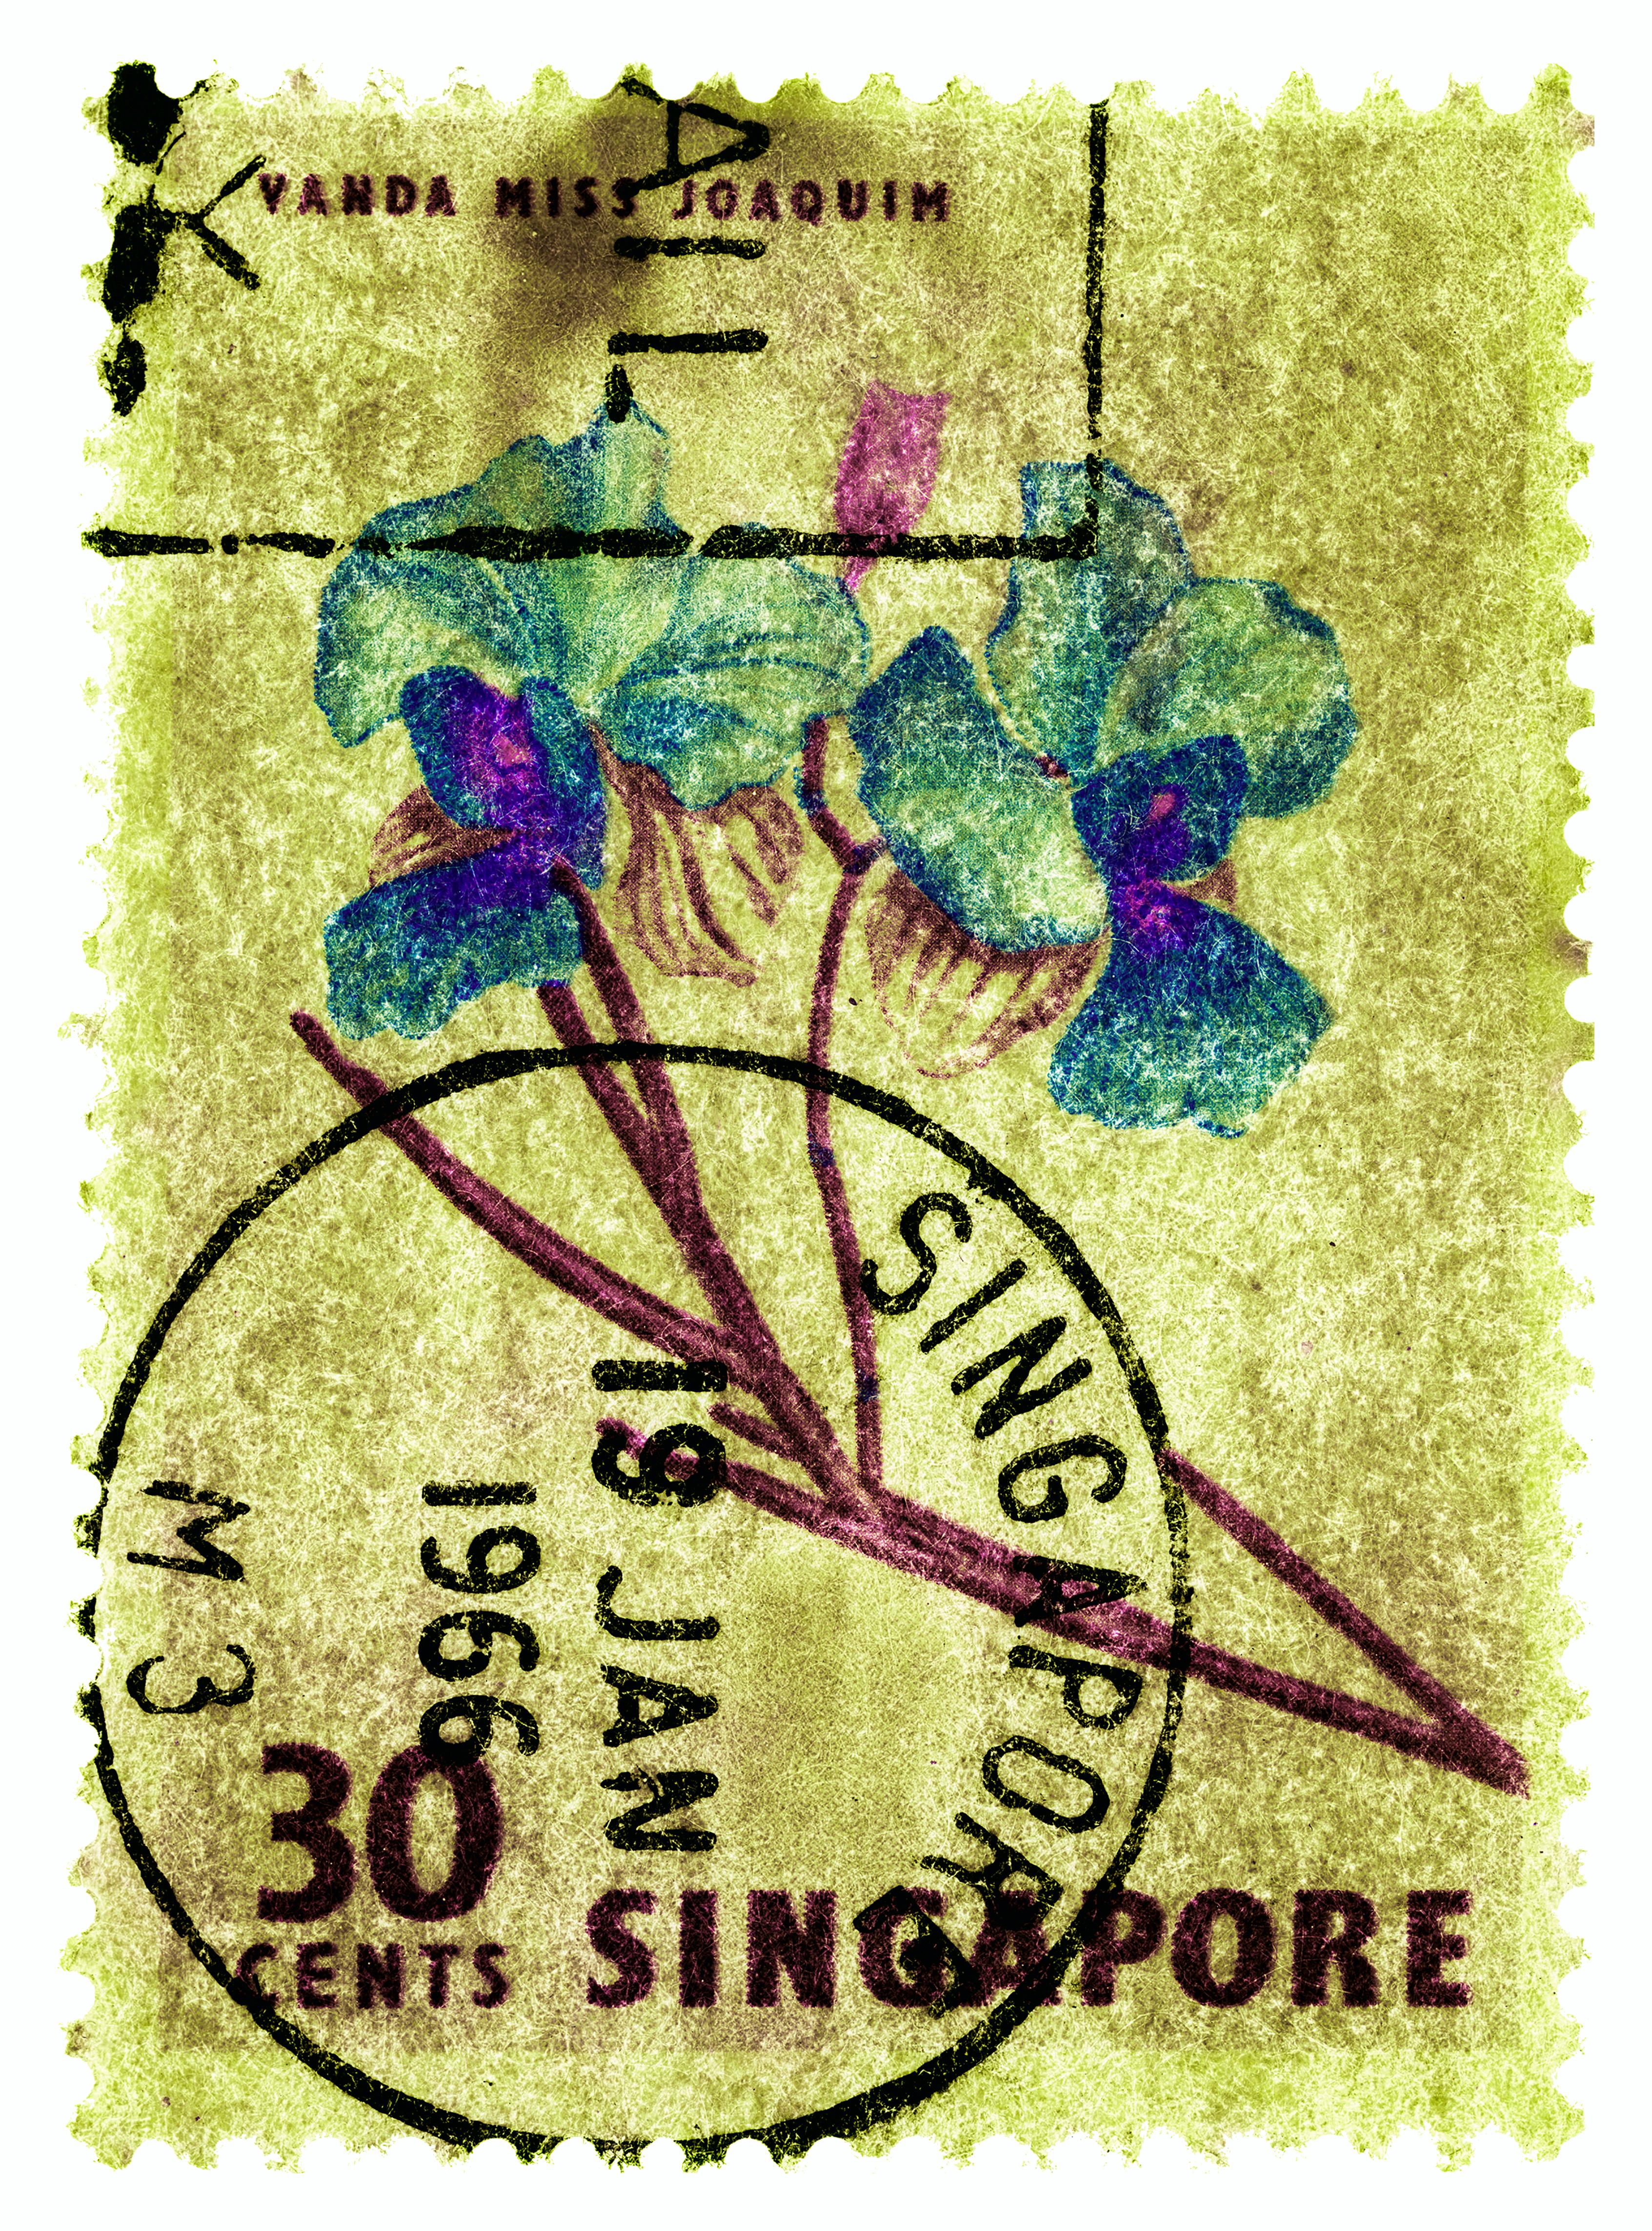 Collection de timbres de Singapour, 30c Singapour Orchid Yellow - photo de couleur florale